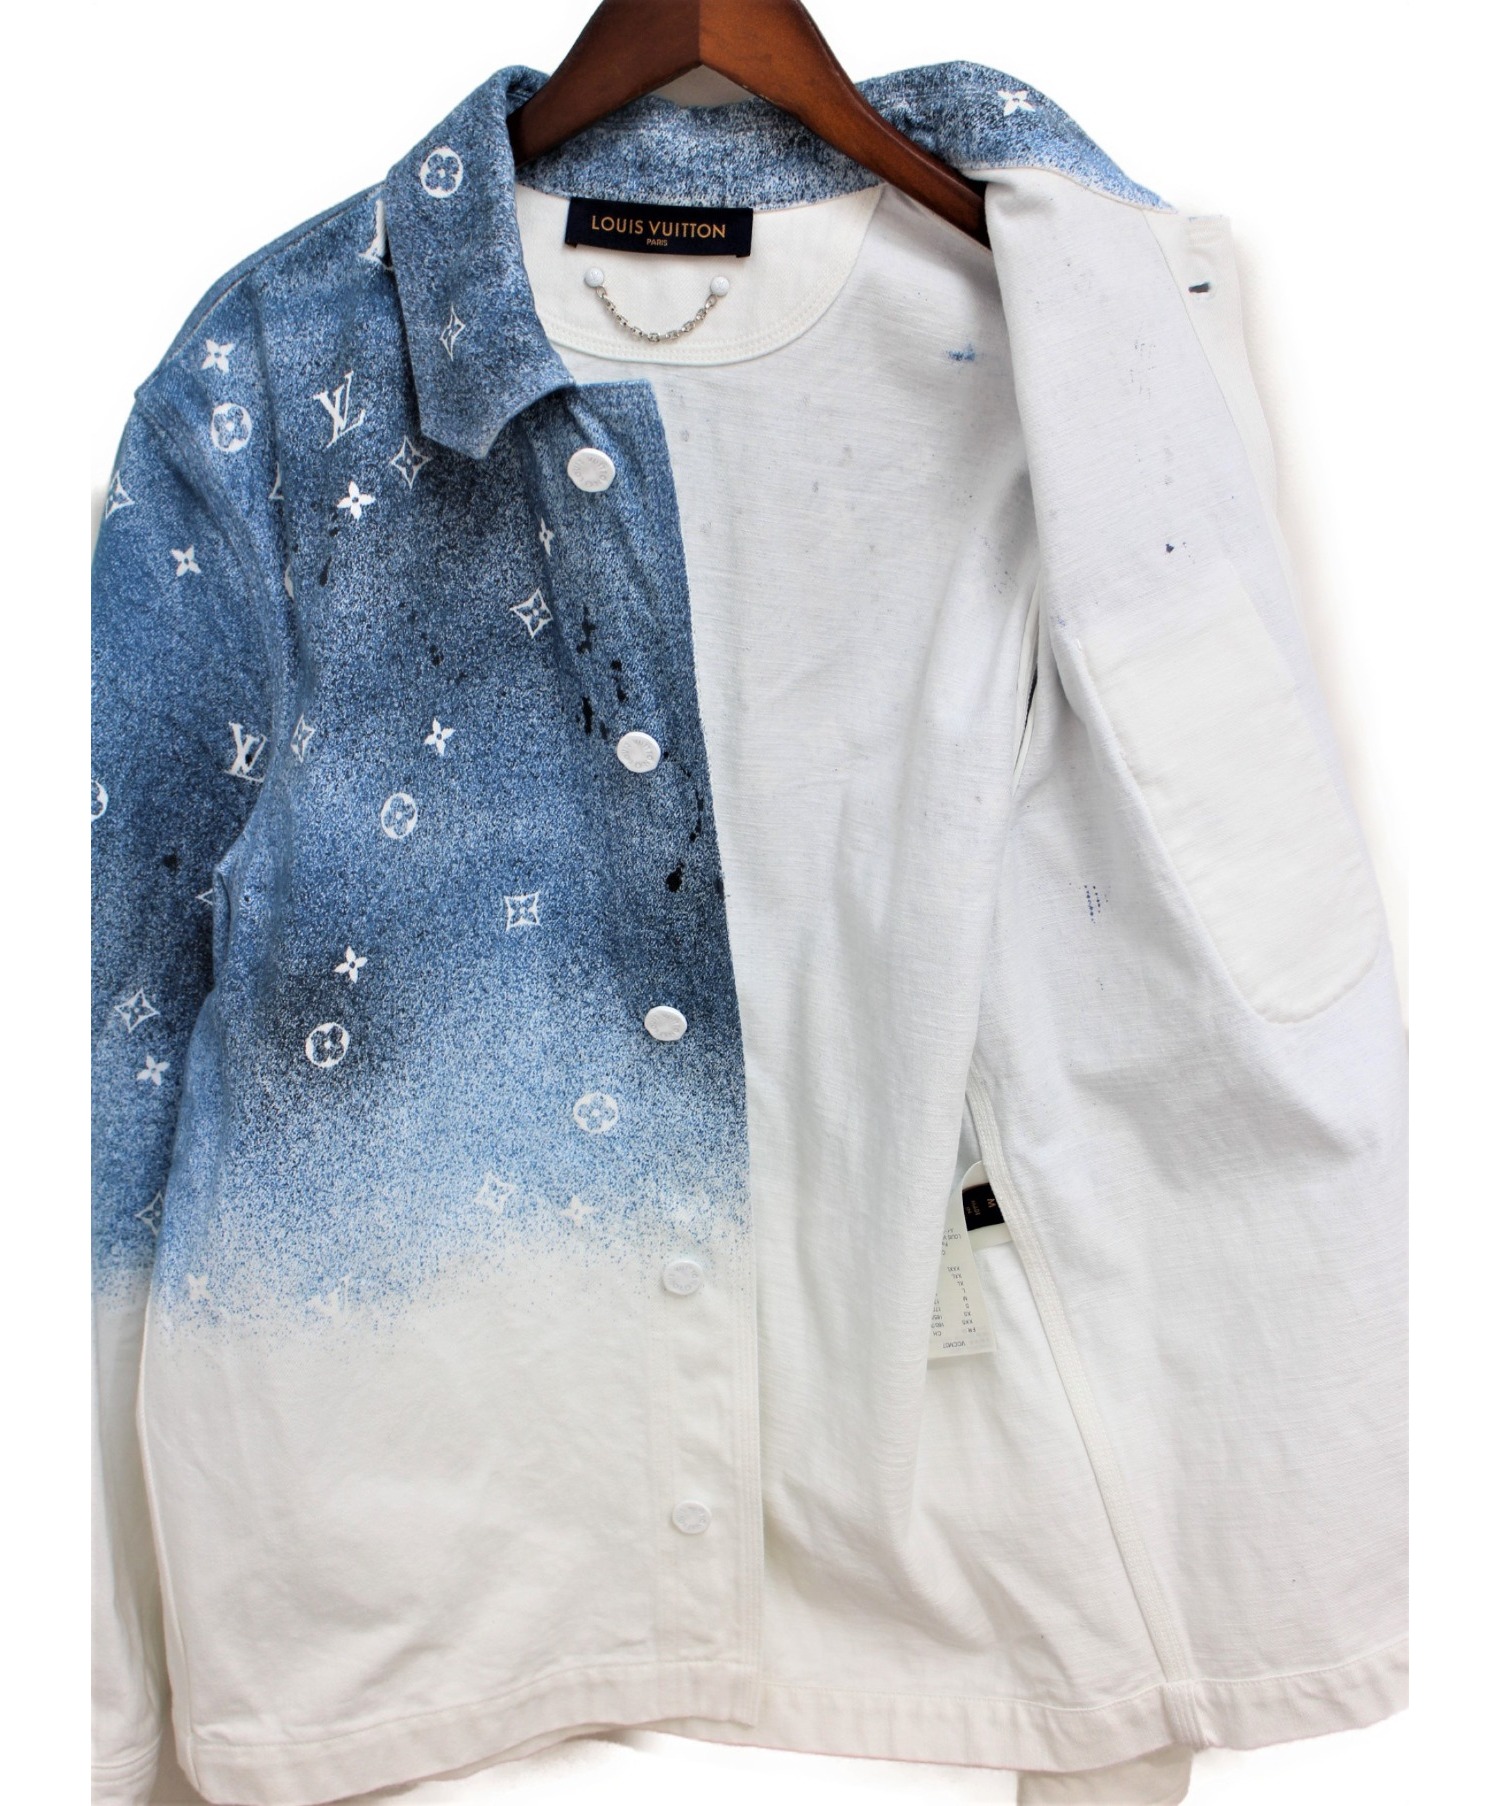 LOUIS VUITTON (ルイヴィトン) 20SS グラデーションジャケット ブルー×ホワイト サイズ:M